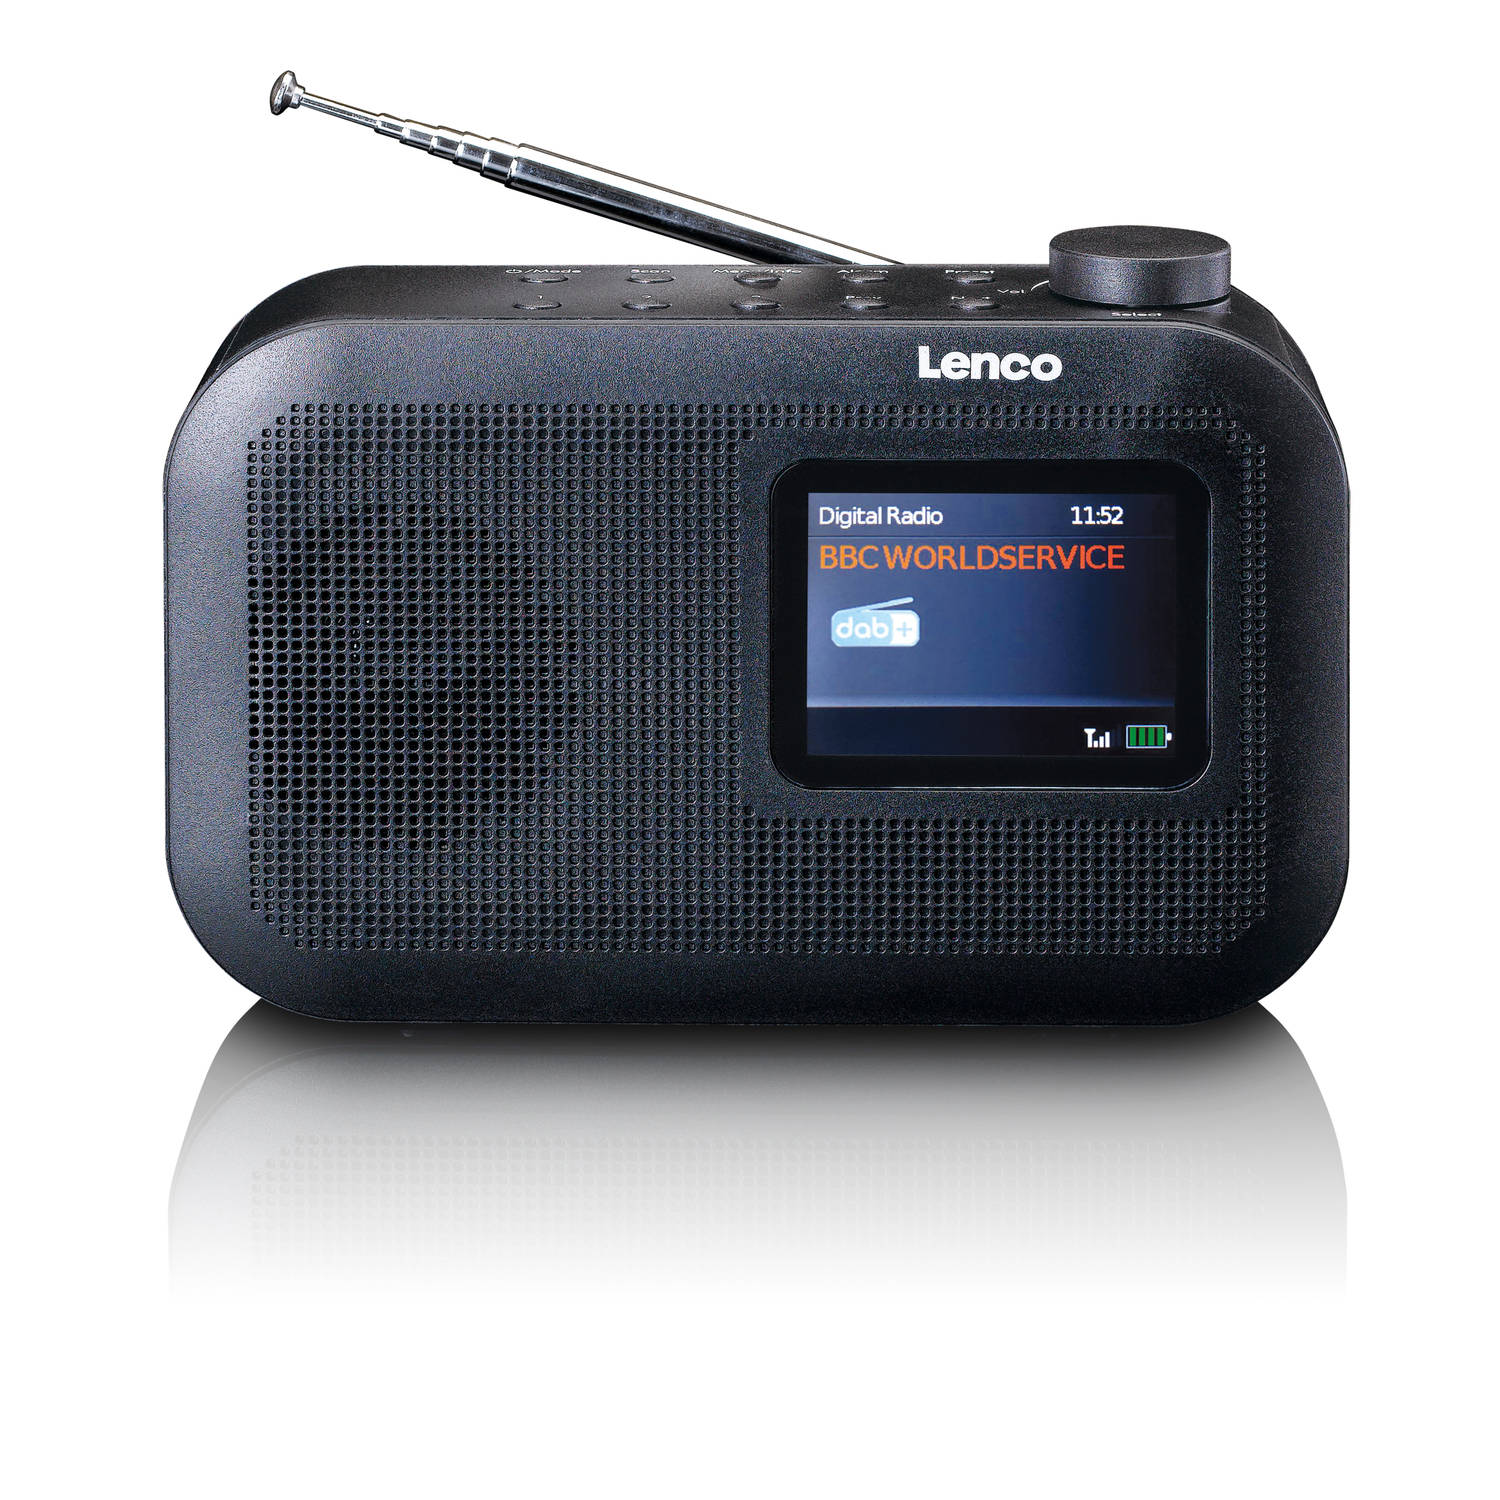 Lenco Digitale radio (dab+) PDR-026BK DAB+ Taschenradio